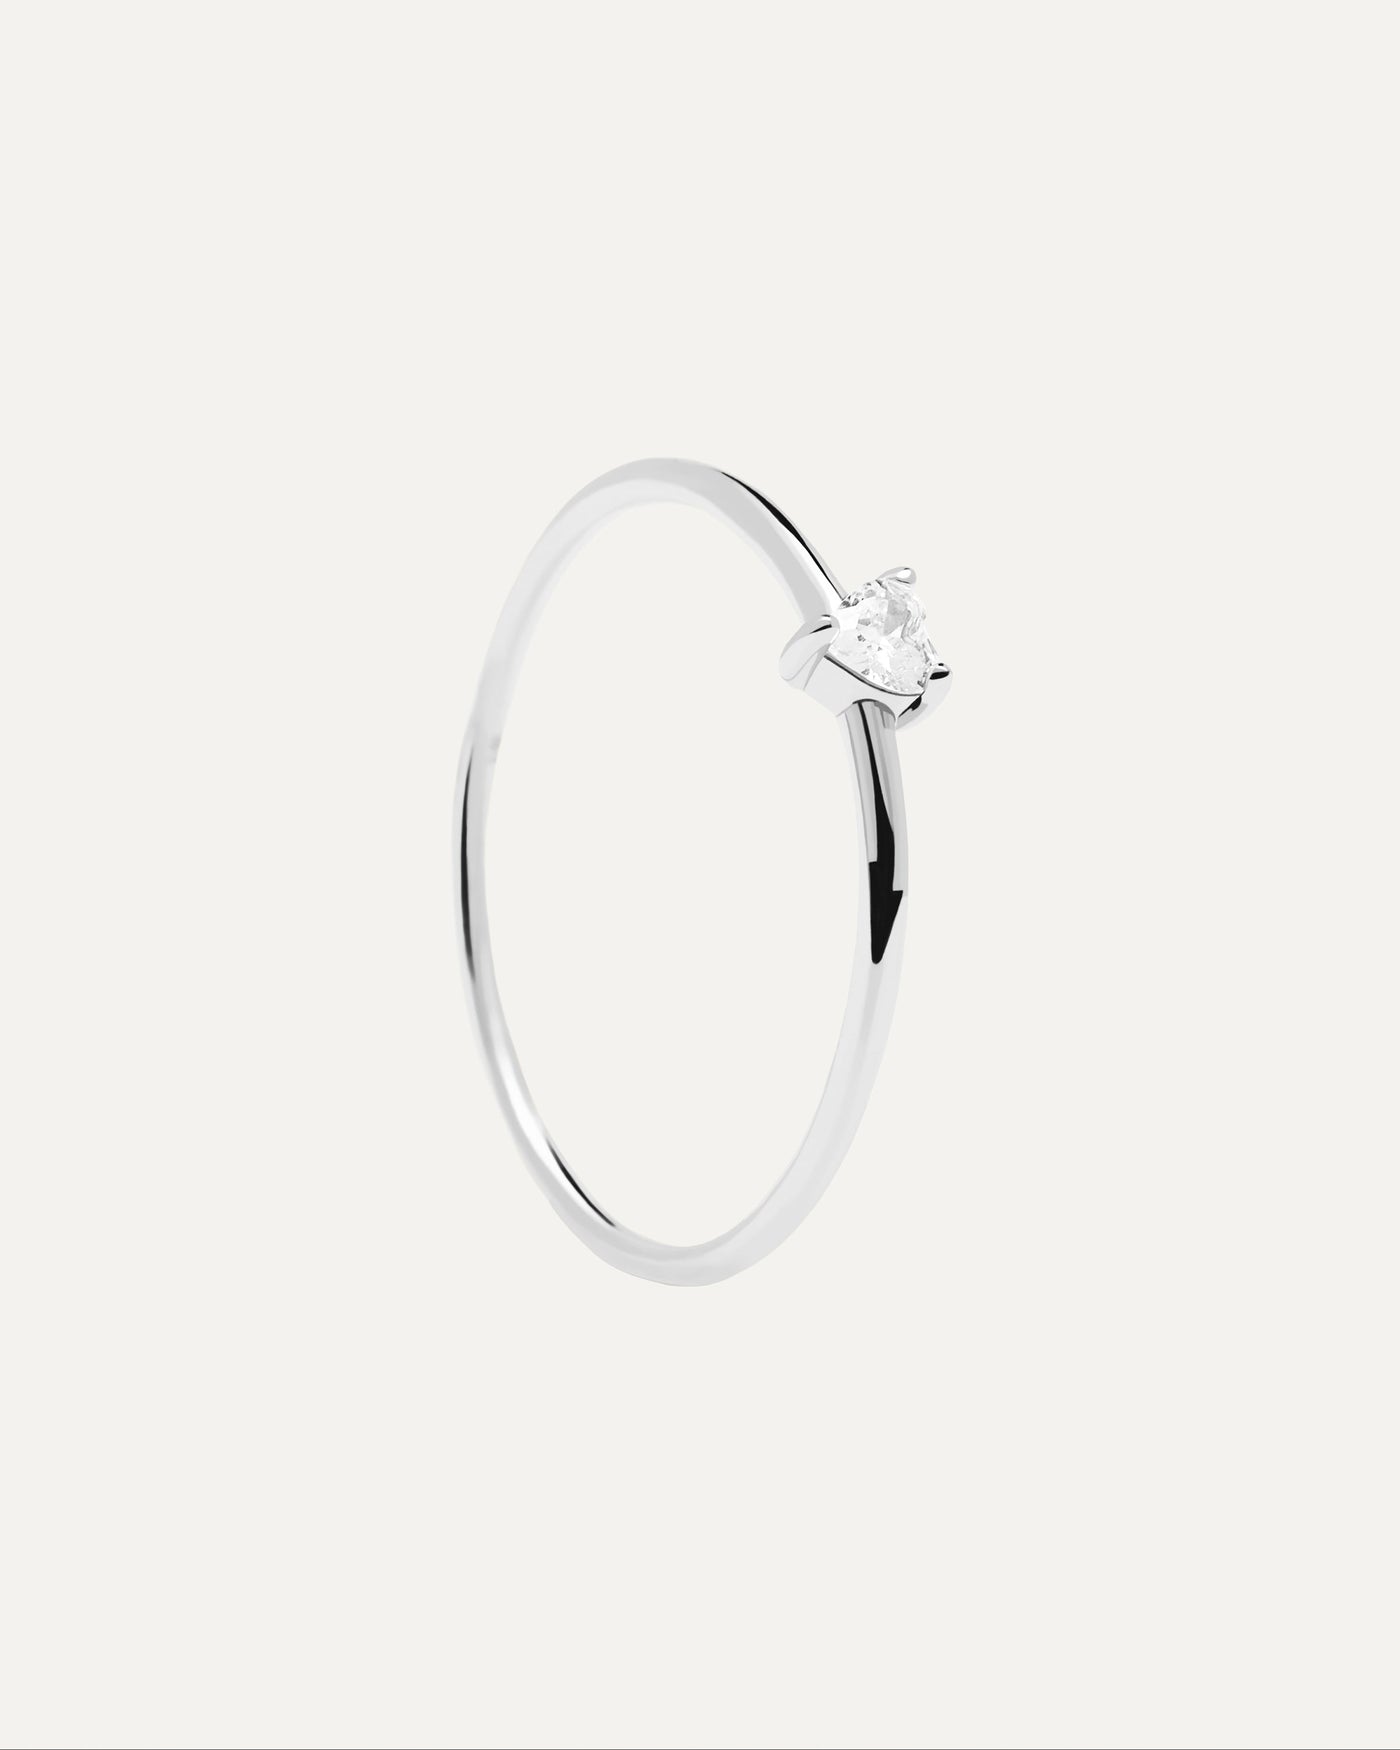 White Heart Silberring. herzförmiger weisser zirkonia auf einem polierten ring aus 925 sterlingsilber. Erhalten Sie die neuesten Produkte von PDPAOLA. Geben Sie Ihre Bestellung sicher auf und erhalten Sie diesen Bestseller.